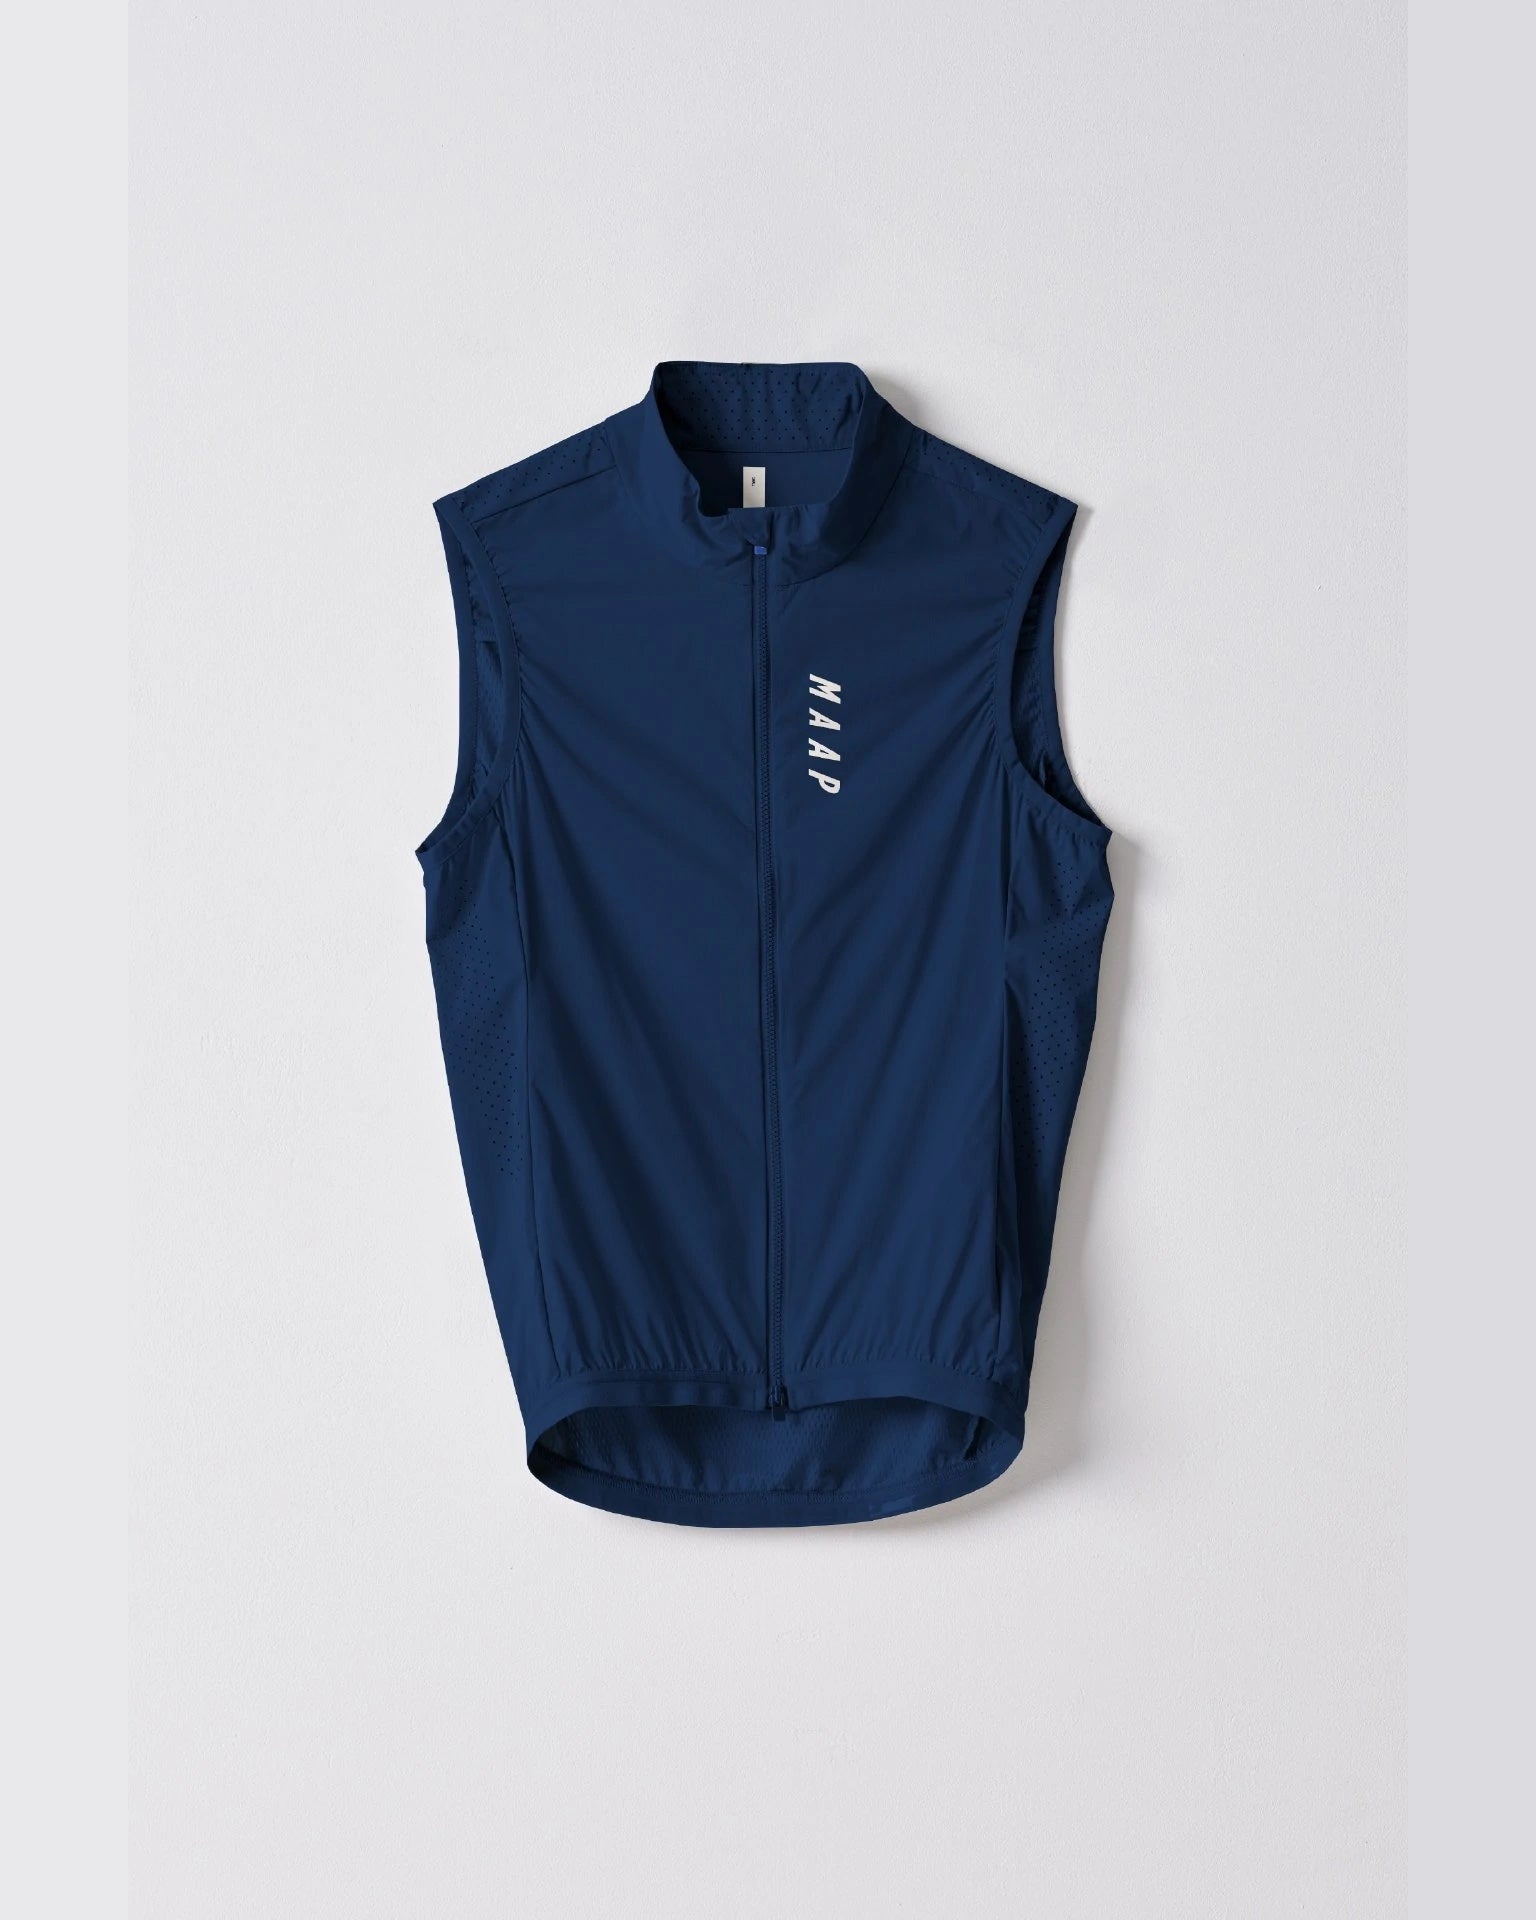 6,970円【新品】MAAP Men's Prime Vest Sサイズ サイクルジレベスト